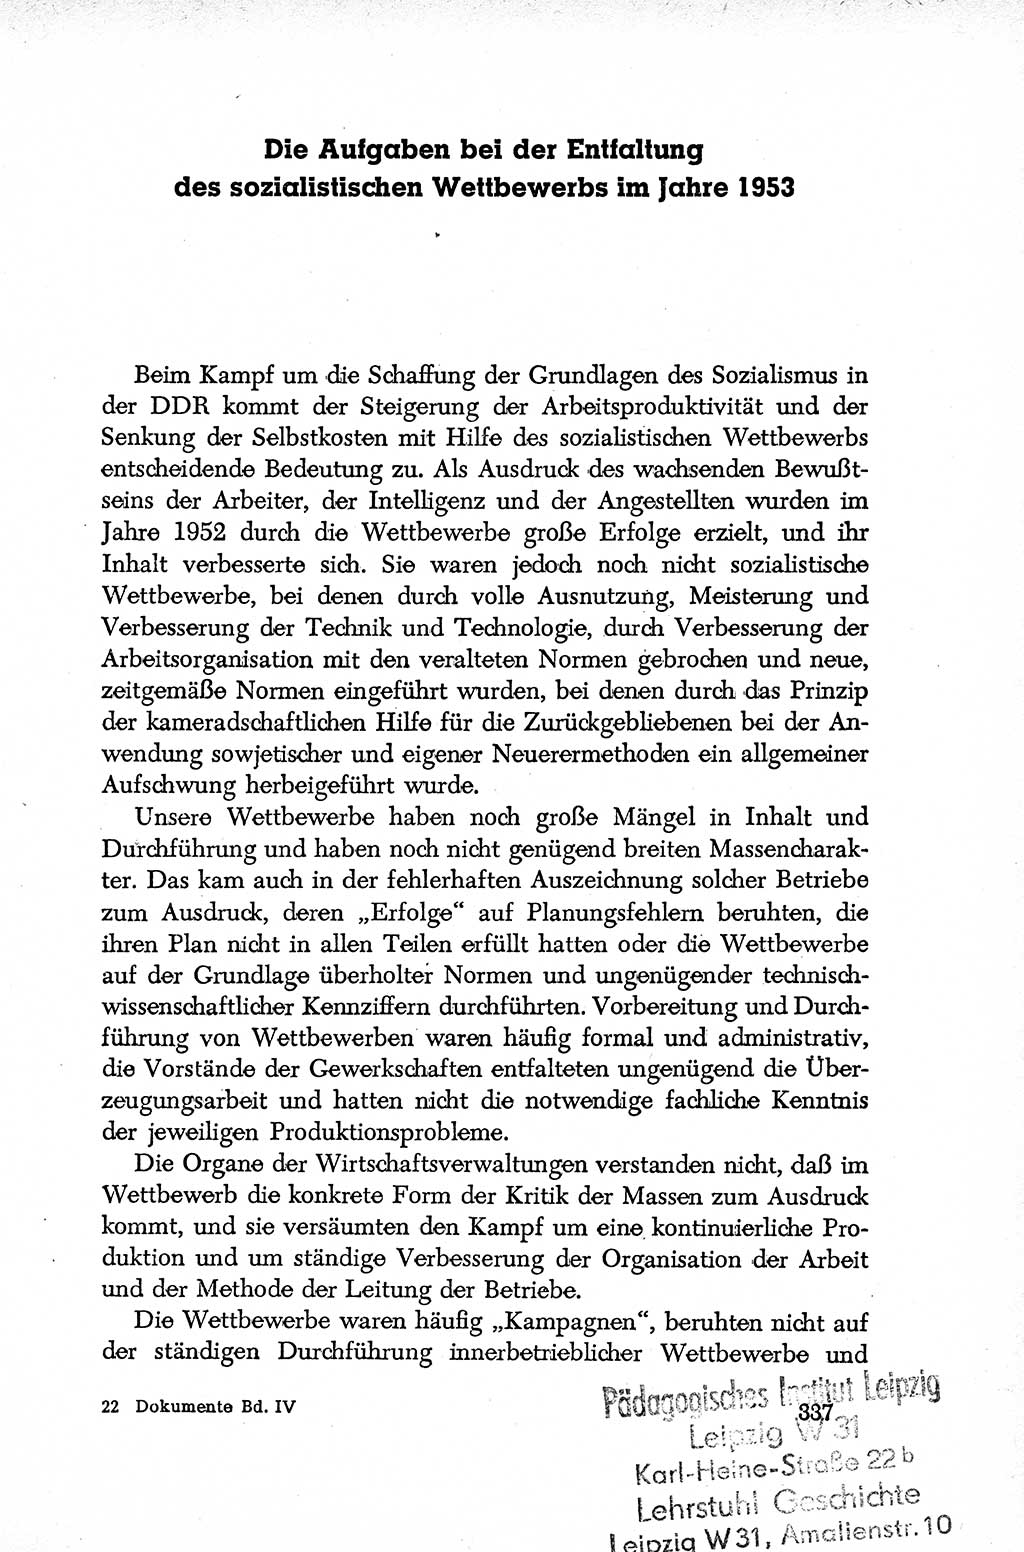 Dokumente der Sozialistischen Einheitspartei Deutschlands (SED) [Deutsche Demokratische Republik (DDR)] 1952-1953, Seite 337 (Dok. SED DDR 1952-1953, S. 337)